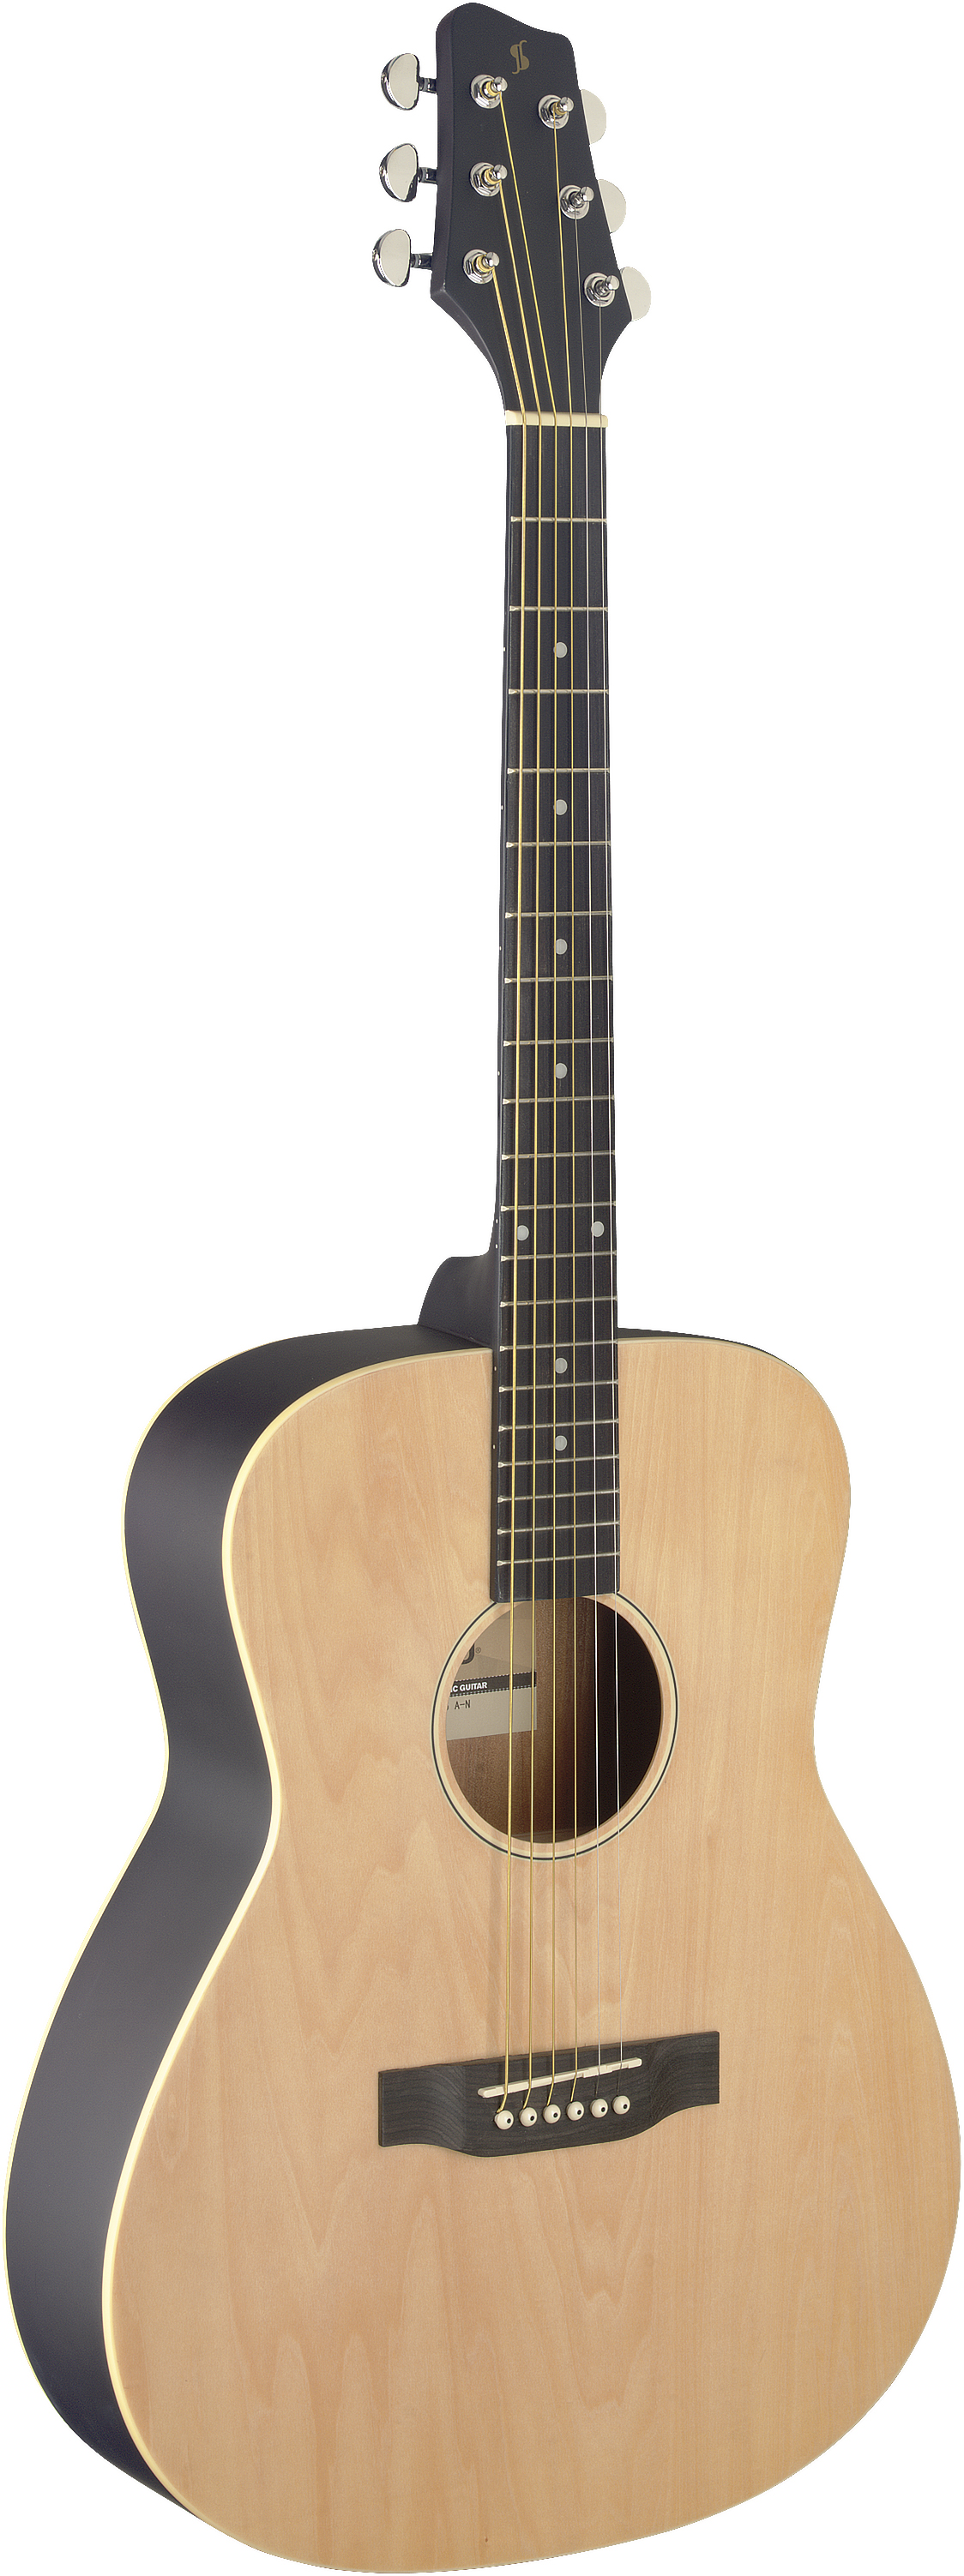 Картинка Акустическая гитара Stagg SA35 A-N - лучшая цена, доставка по России